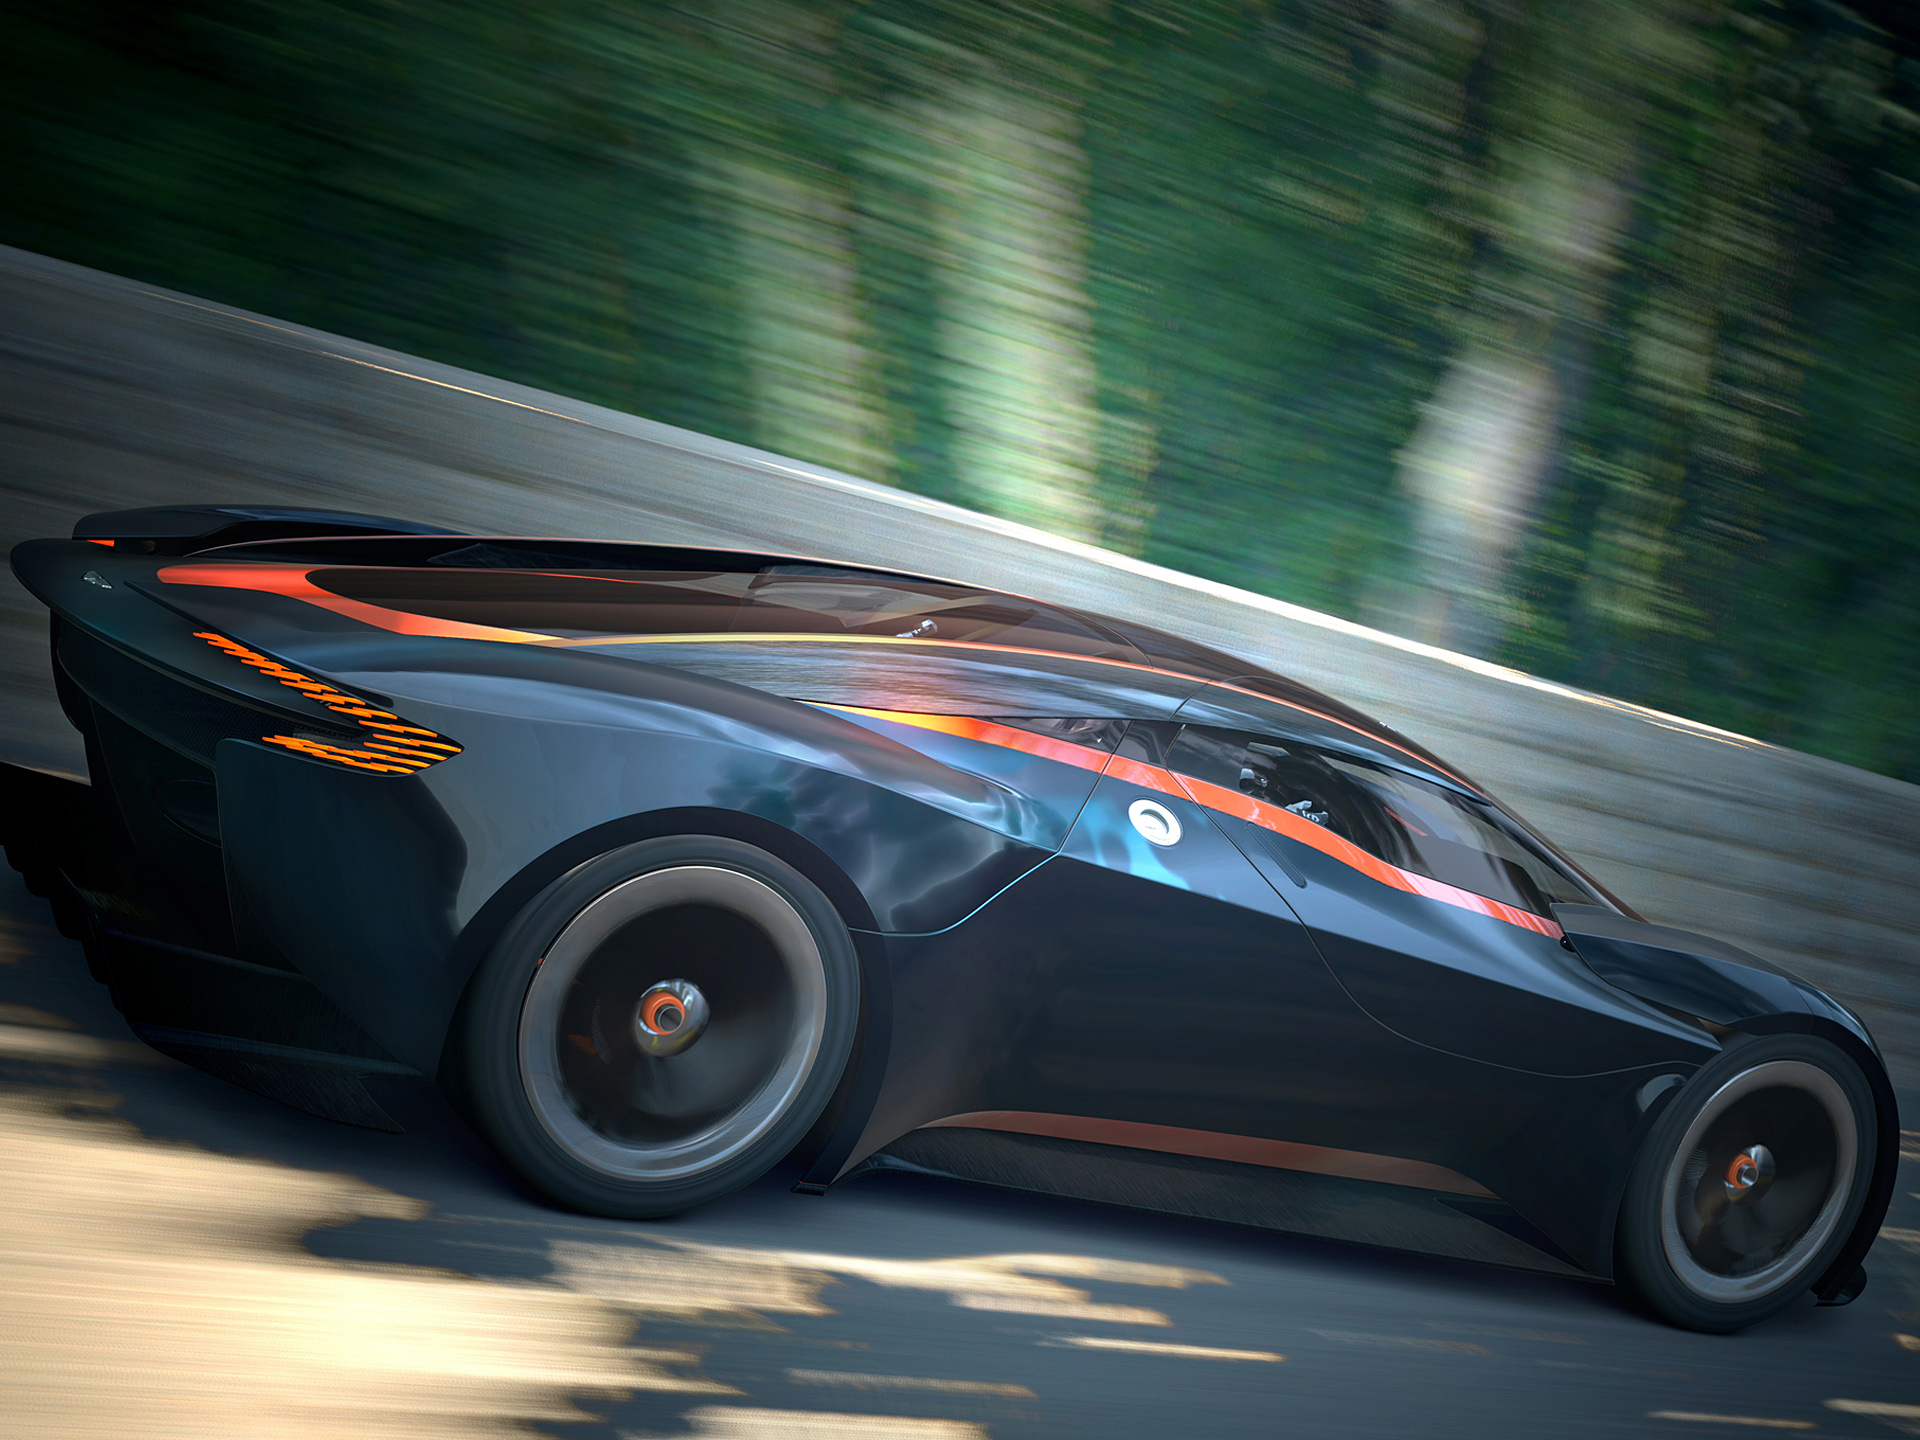  2014 Aston Martin DP-100 Vision Gran Turismo Concept Wallpaper.